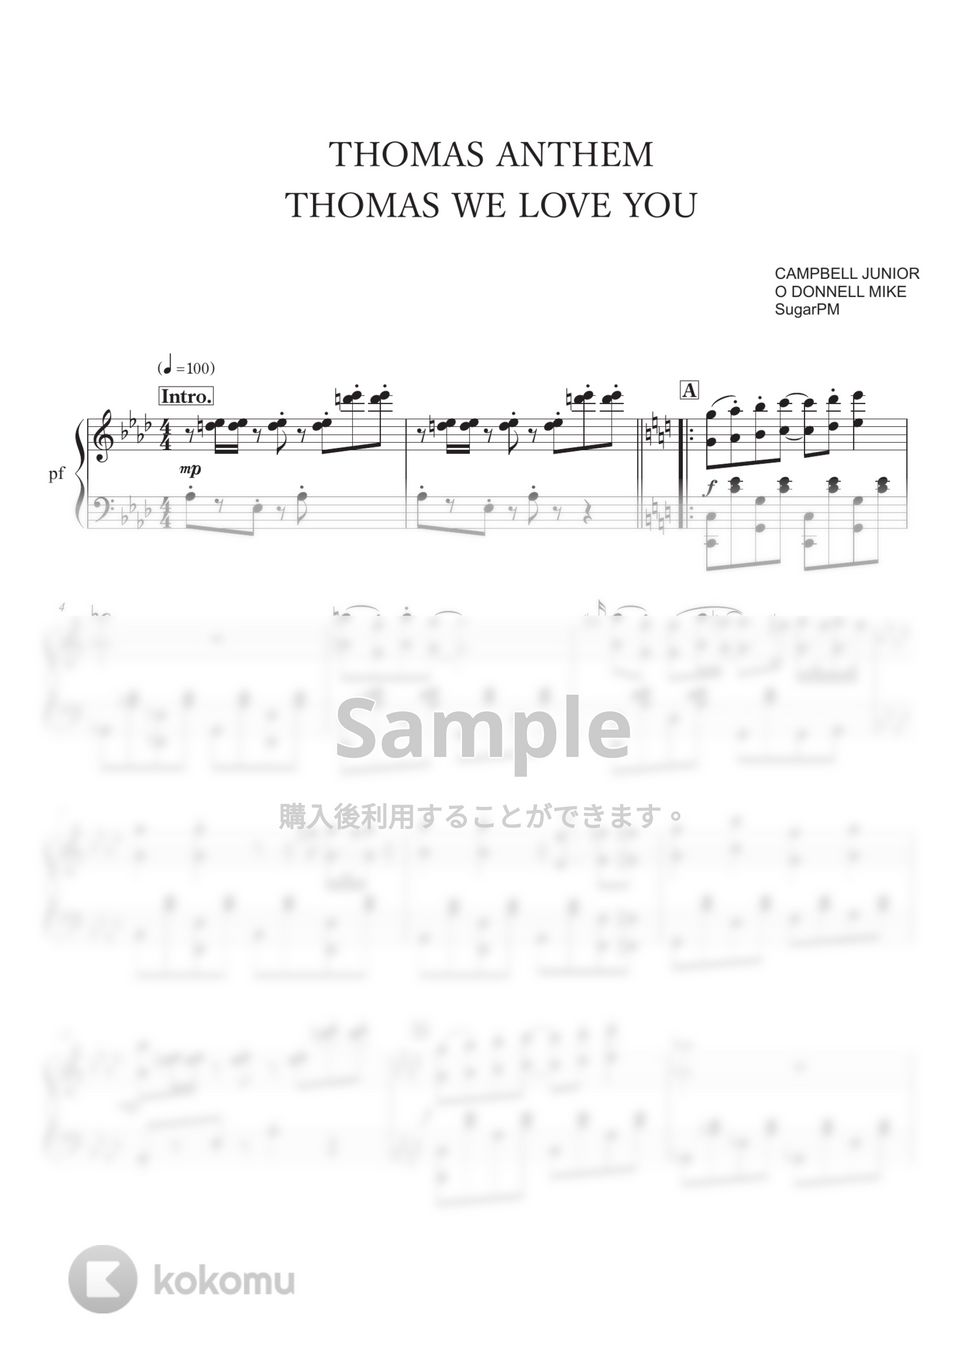 機関車トーマス - 機関車トーマスのテーマ/ピアノ中級〜　THOMAS ANTHEM THOMAS WE LOVE YOU by SugarPM